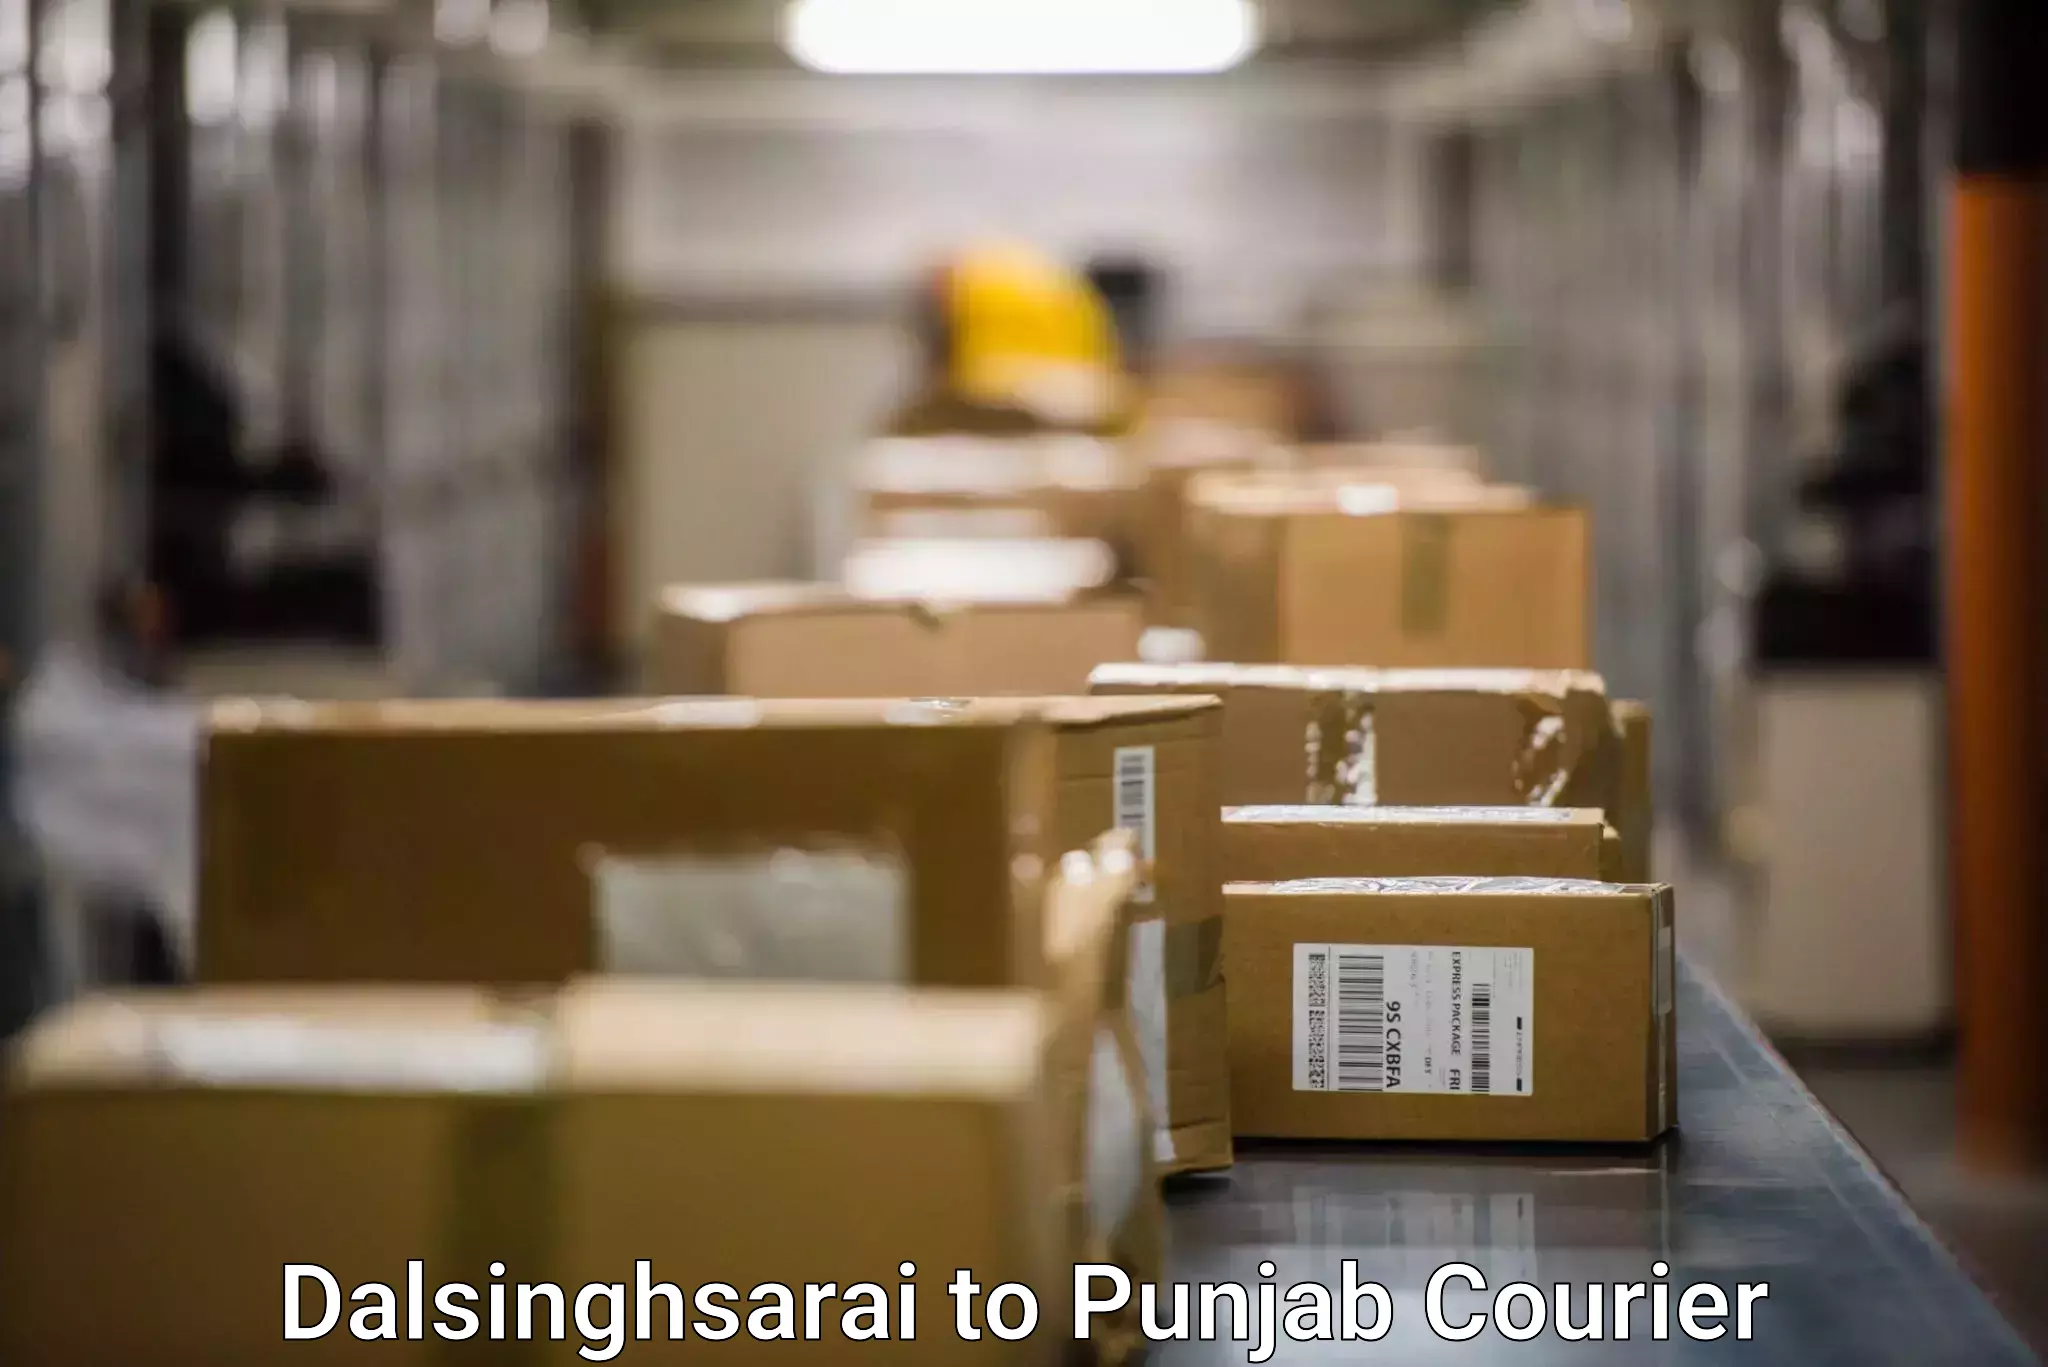 Premium delivery services Dalsinghsarai to Sri Hargobindpur